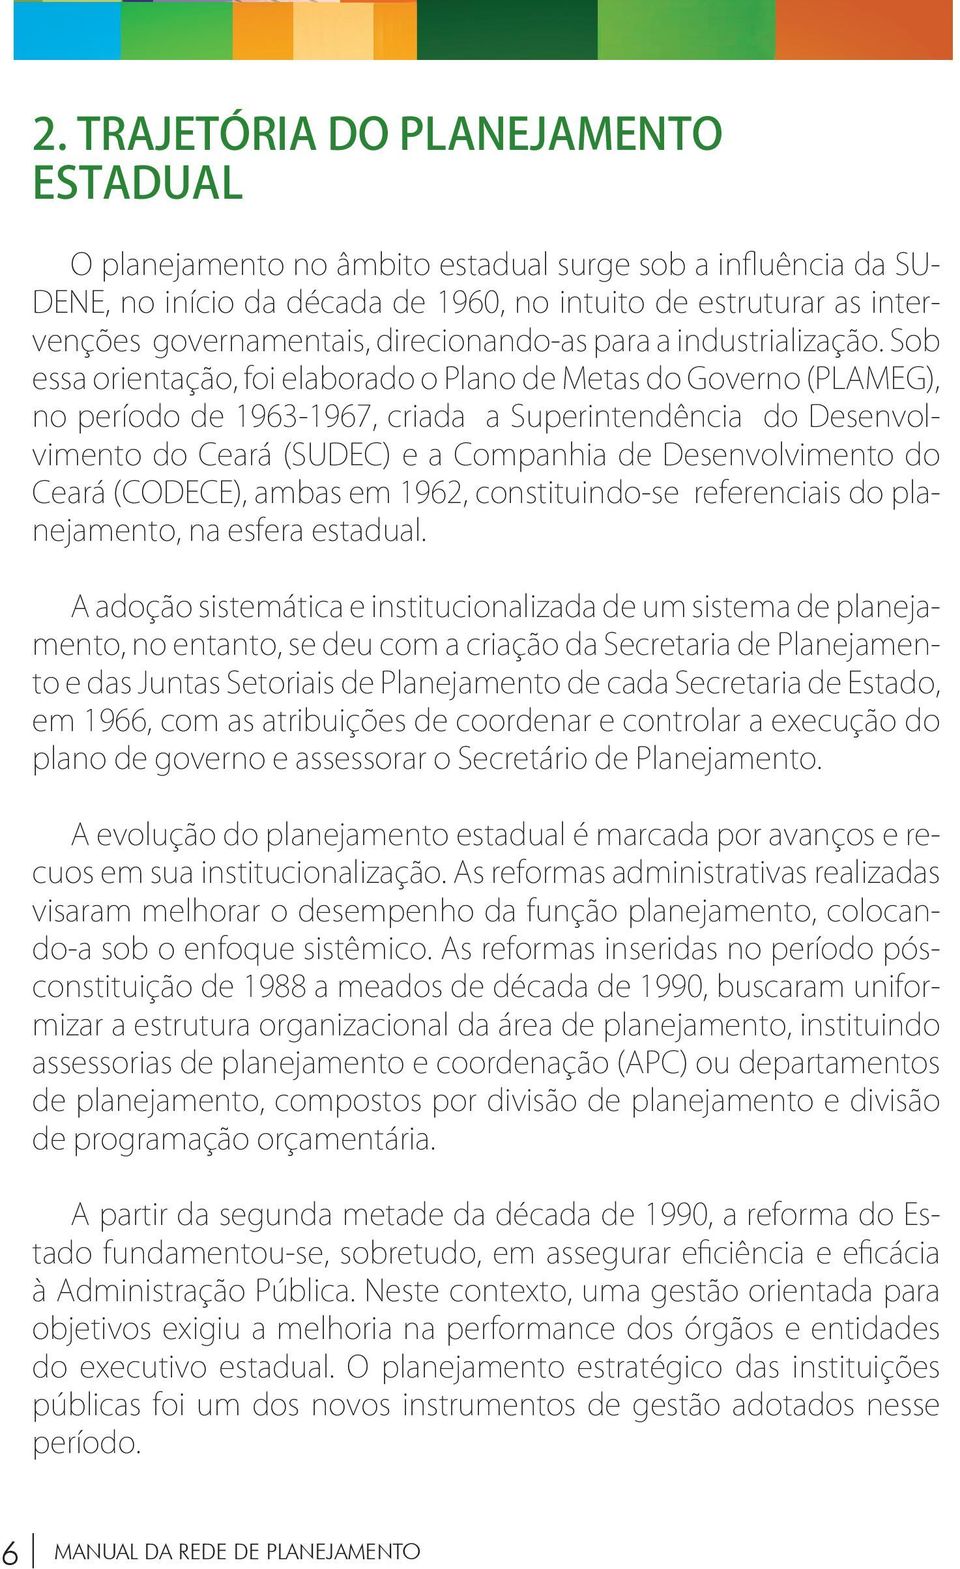 Sob essa orientação, foi elaborado o Plano de Metas do Governo (PLAMEG), no período de 1963-1967, criada a Superintendência do Desenvolvimento do Ceará (SUDEC) e a Companhia de Desenvolvimento do